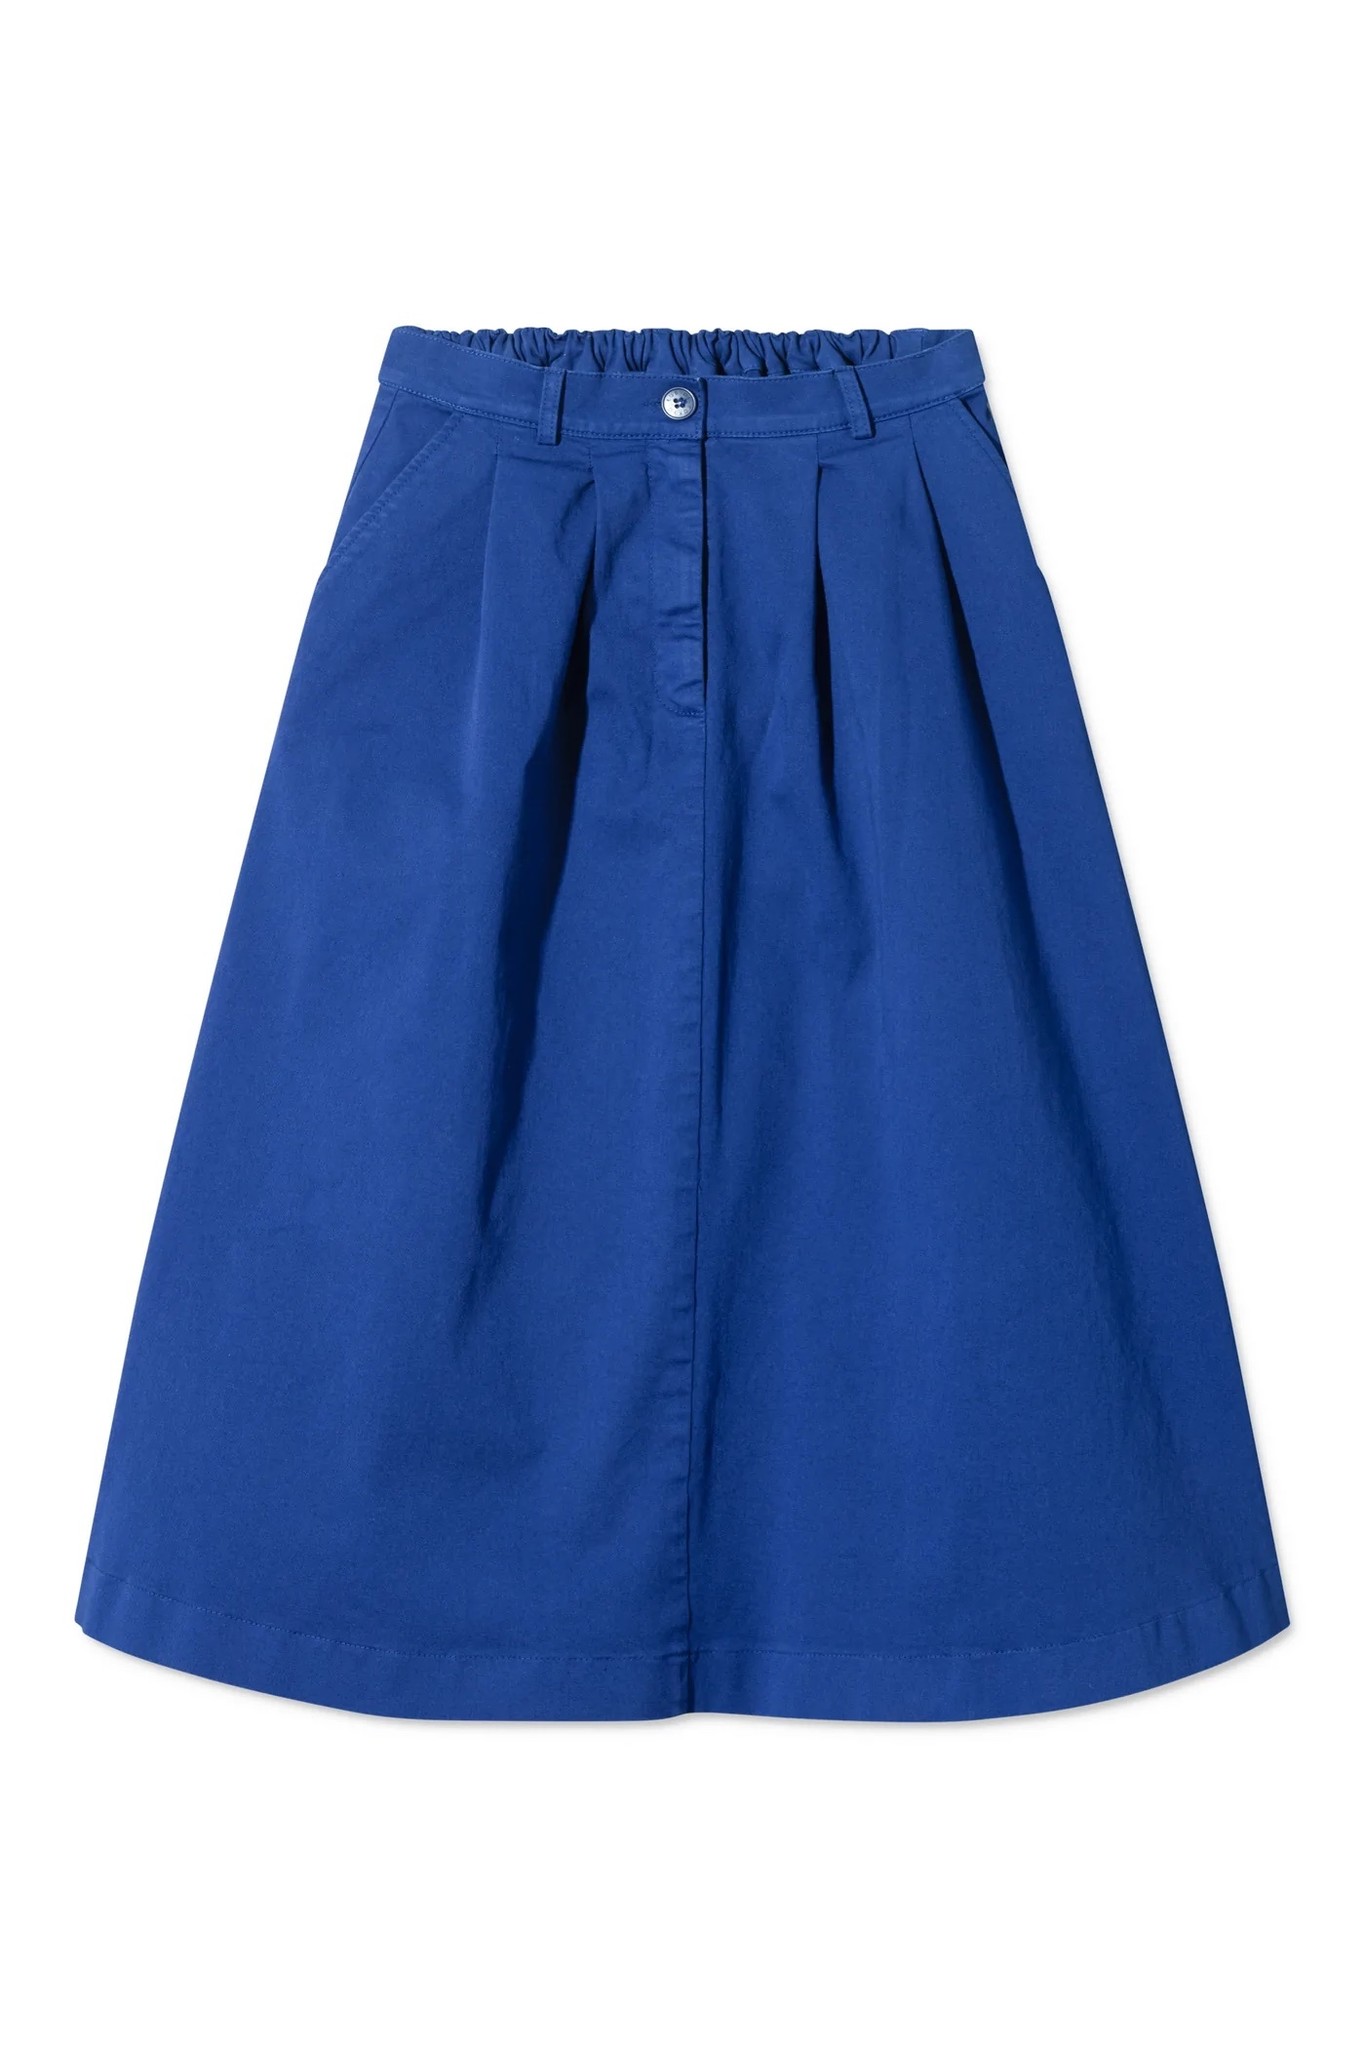 pen skirt vivid blue-2